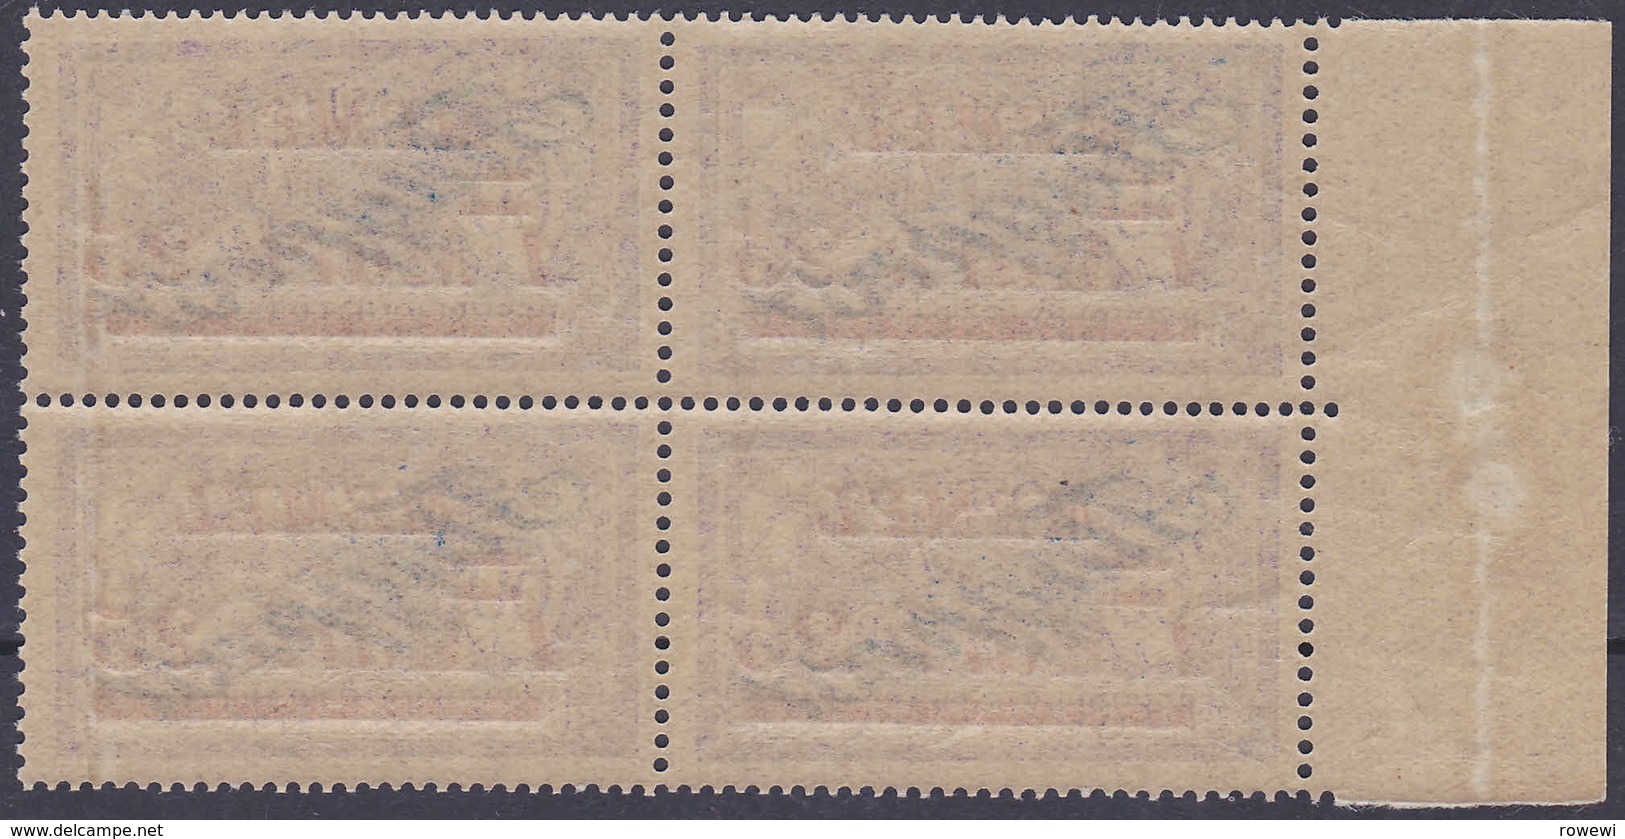 Memel MiNr. 75 Im Postfrischen Rand-VB (R 982) - Memelgebiet 1923